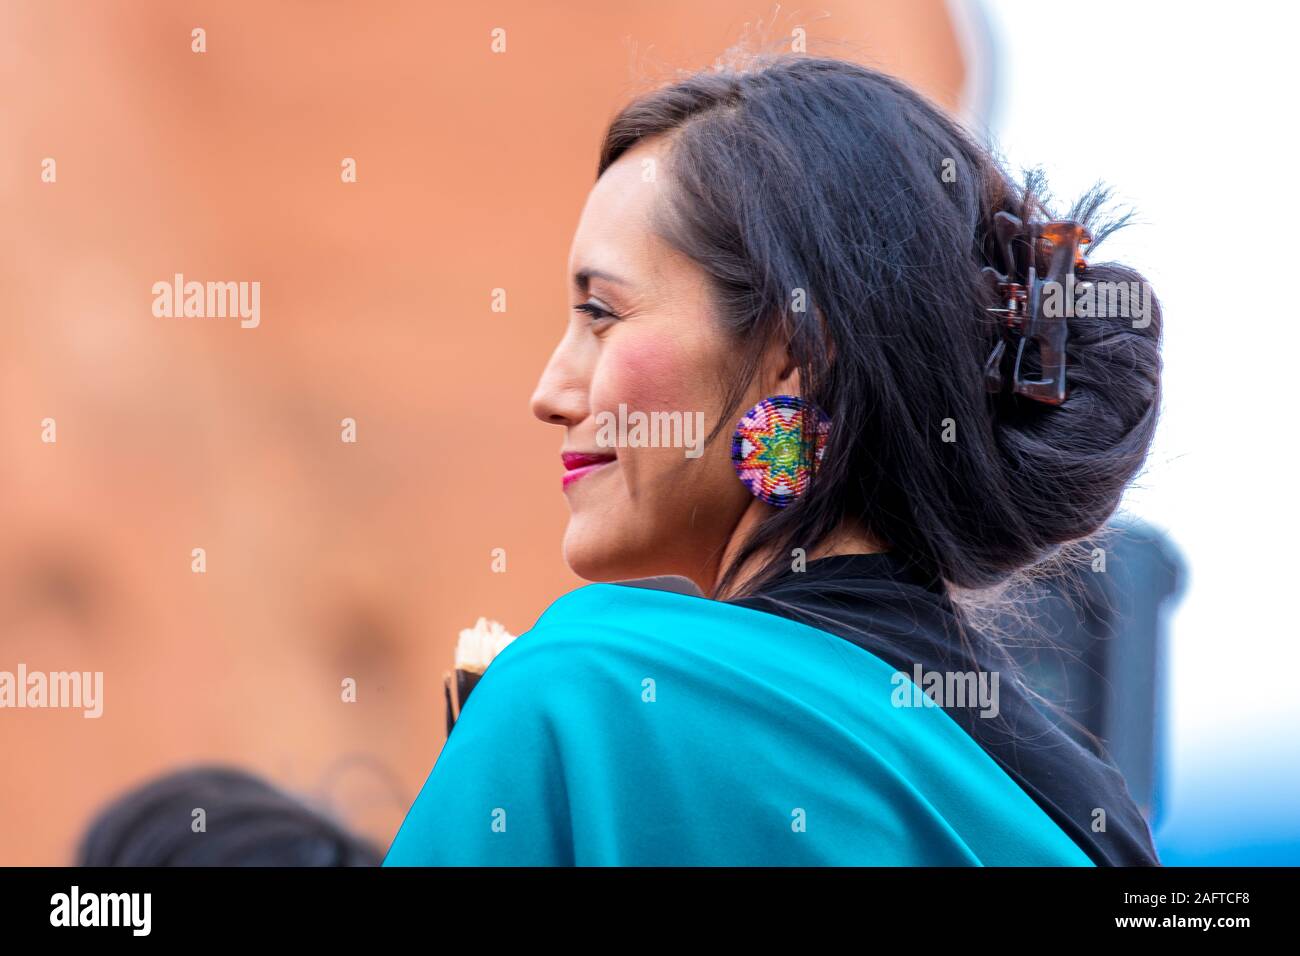 Agosto 10 & 11, 2019 - GALLUP NEW MEXICO, STATI UNITI D'AMERICA - Ritratto di Native American donna presso il novantottesimo Gallup Inter-tribal Indian Ceremonial, Nuovo Messico Foto Stock